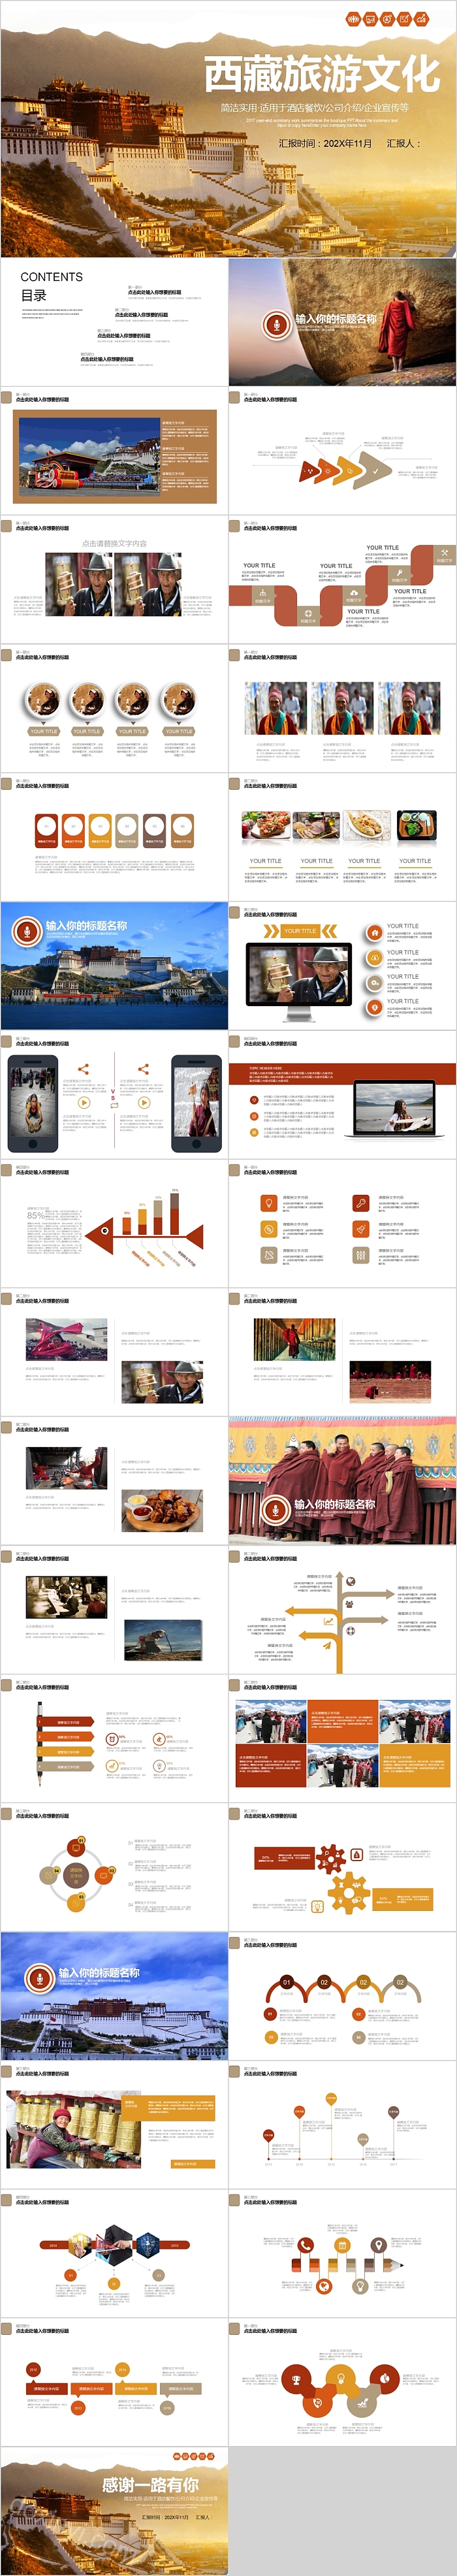 简洁实用西藏旅游文化PPT模板